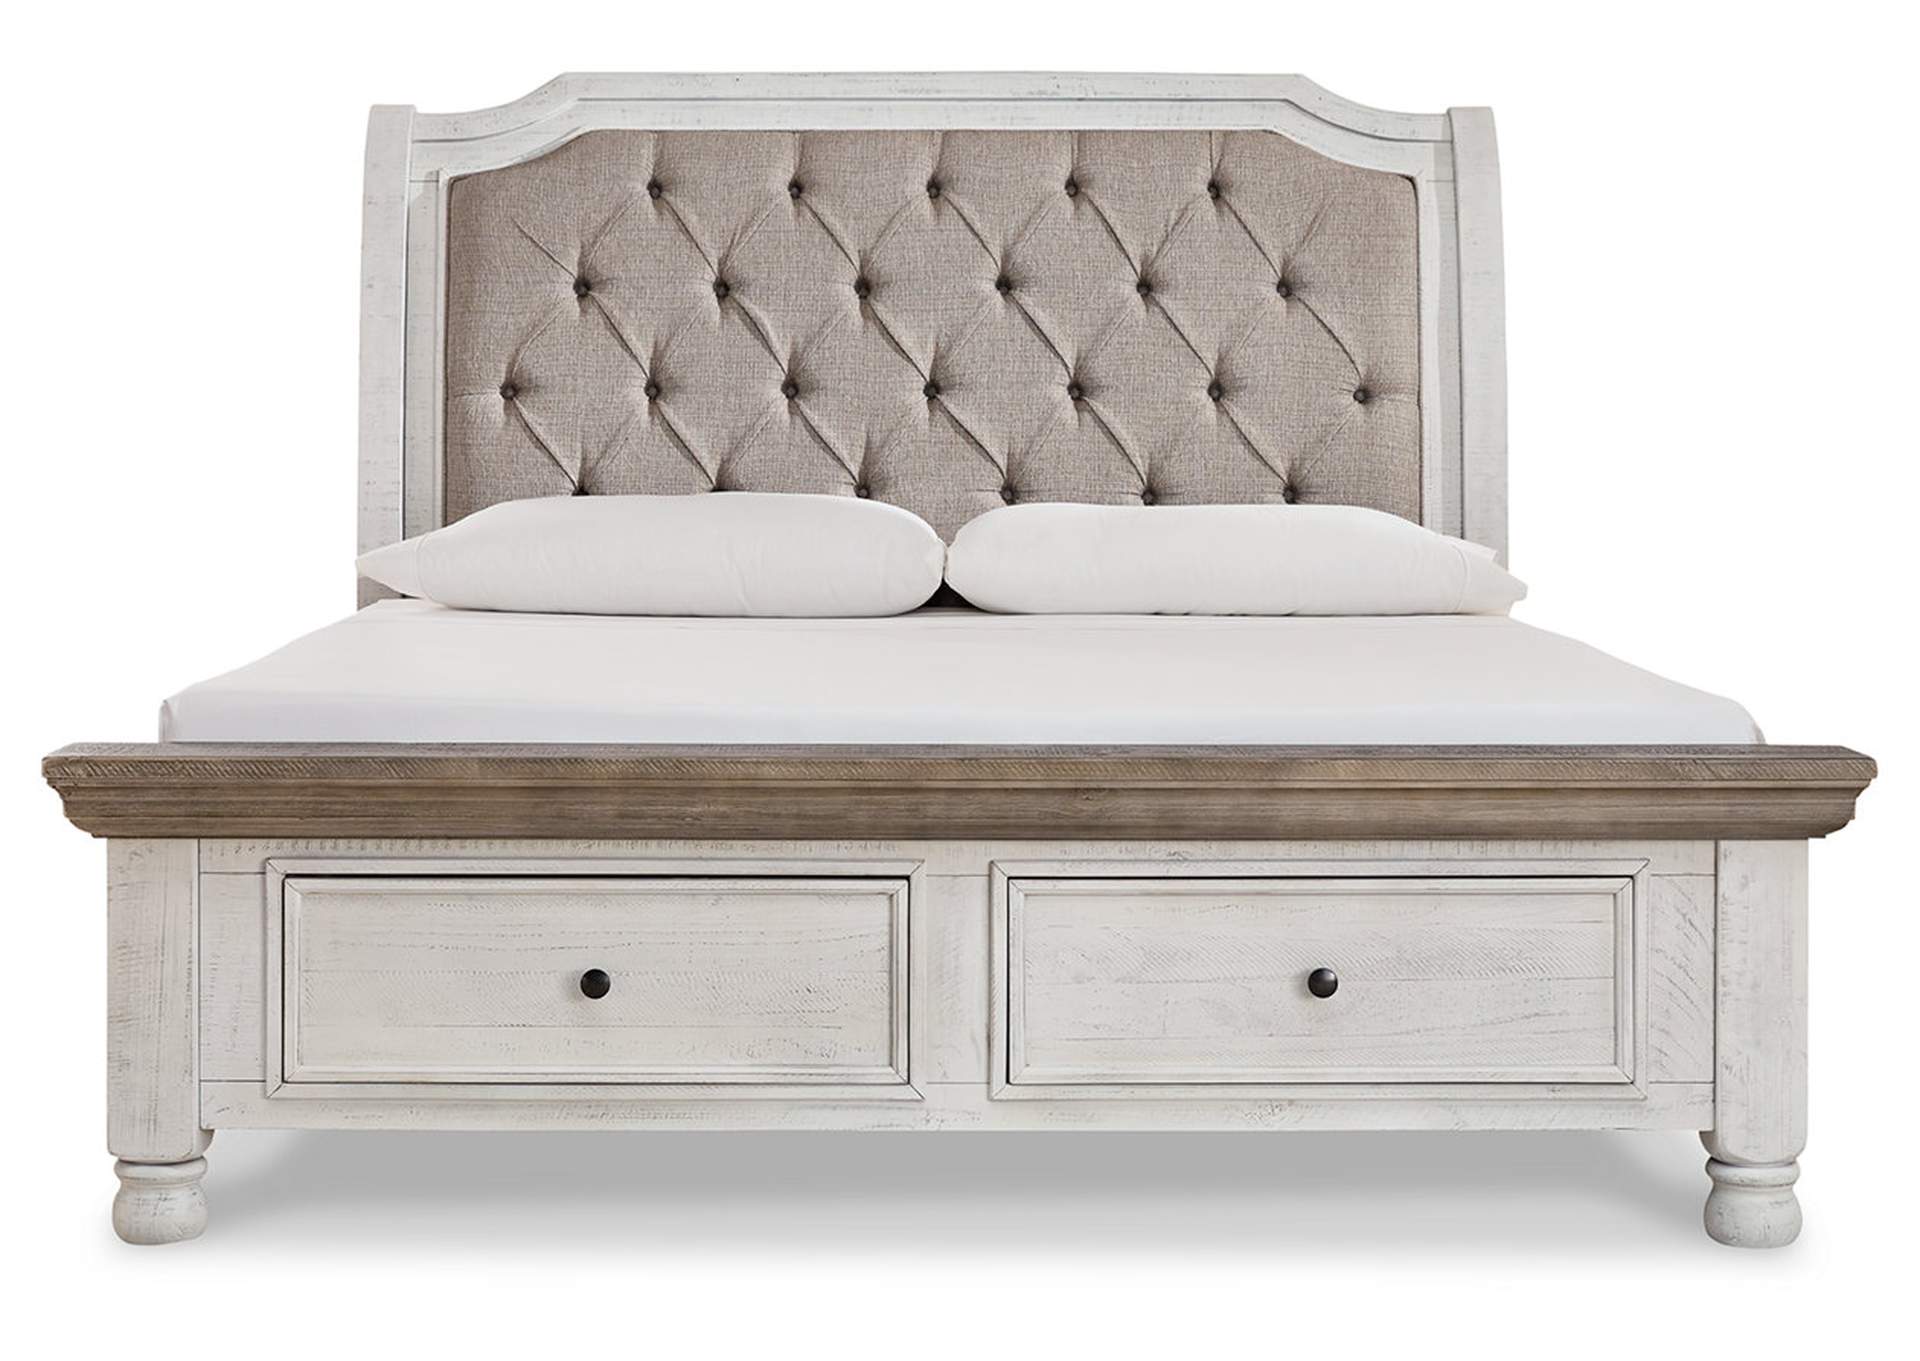 Havalance King Sleigh Bed with Storage, Dresser and Mirror,Millennium